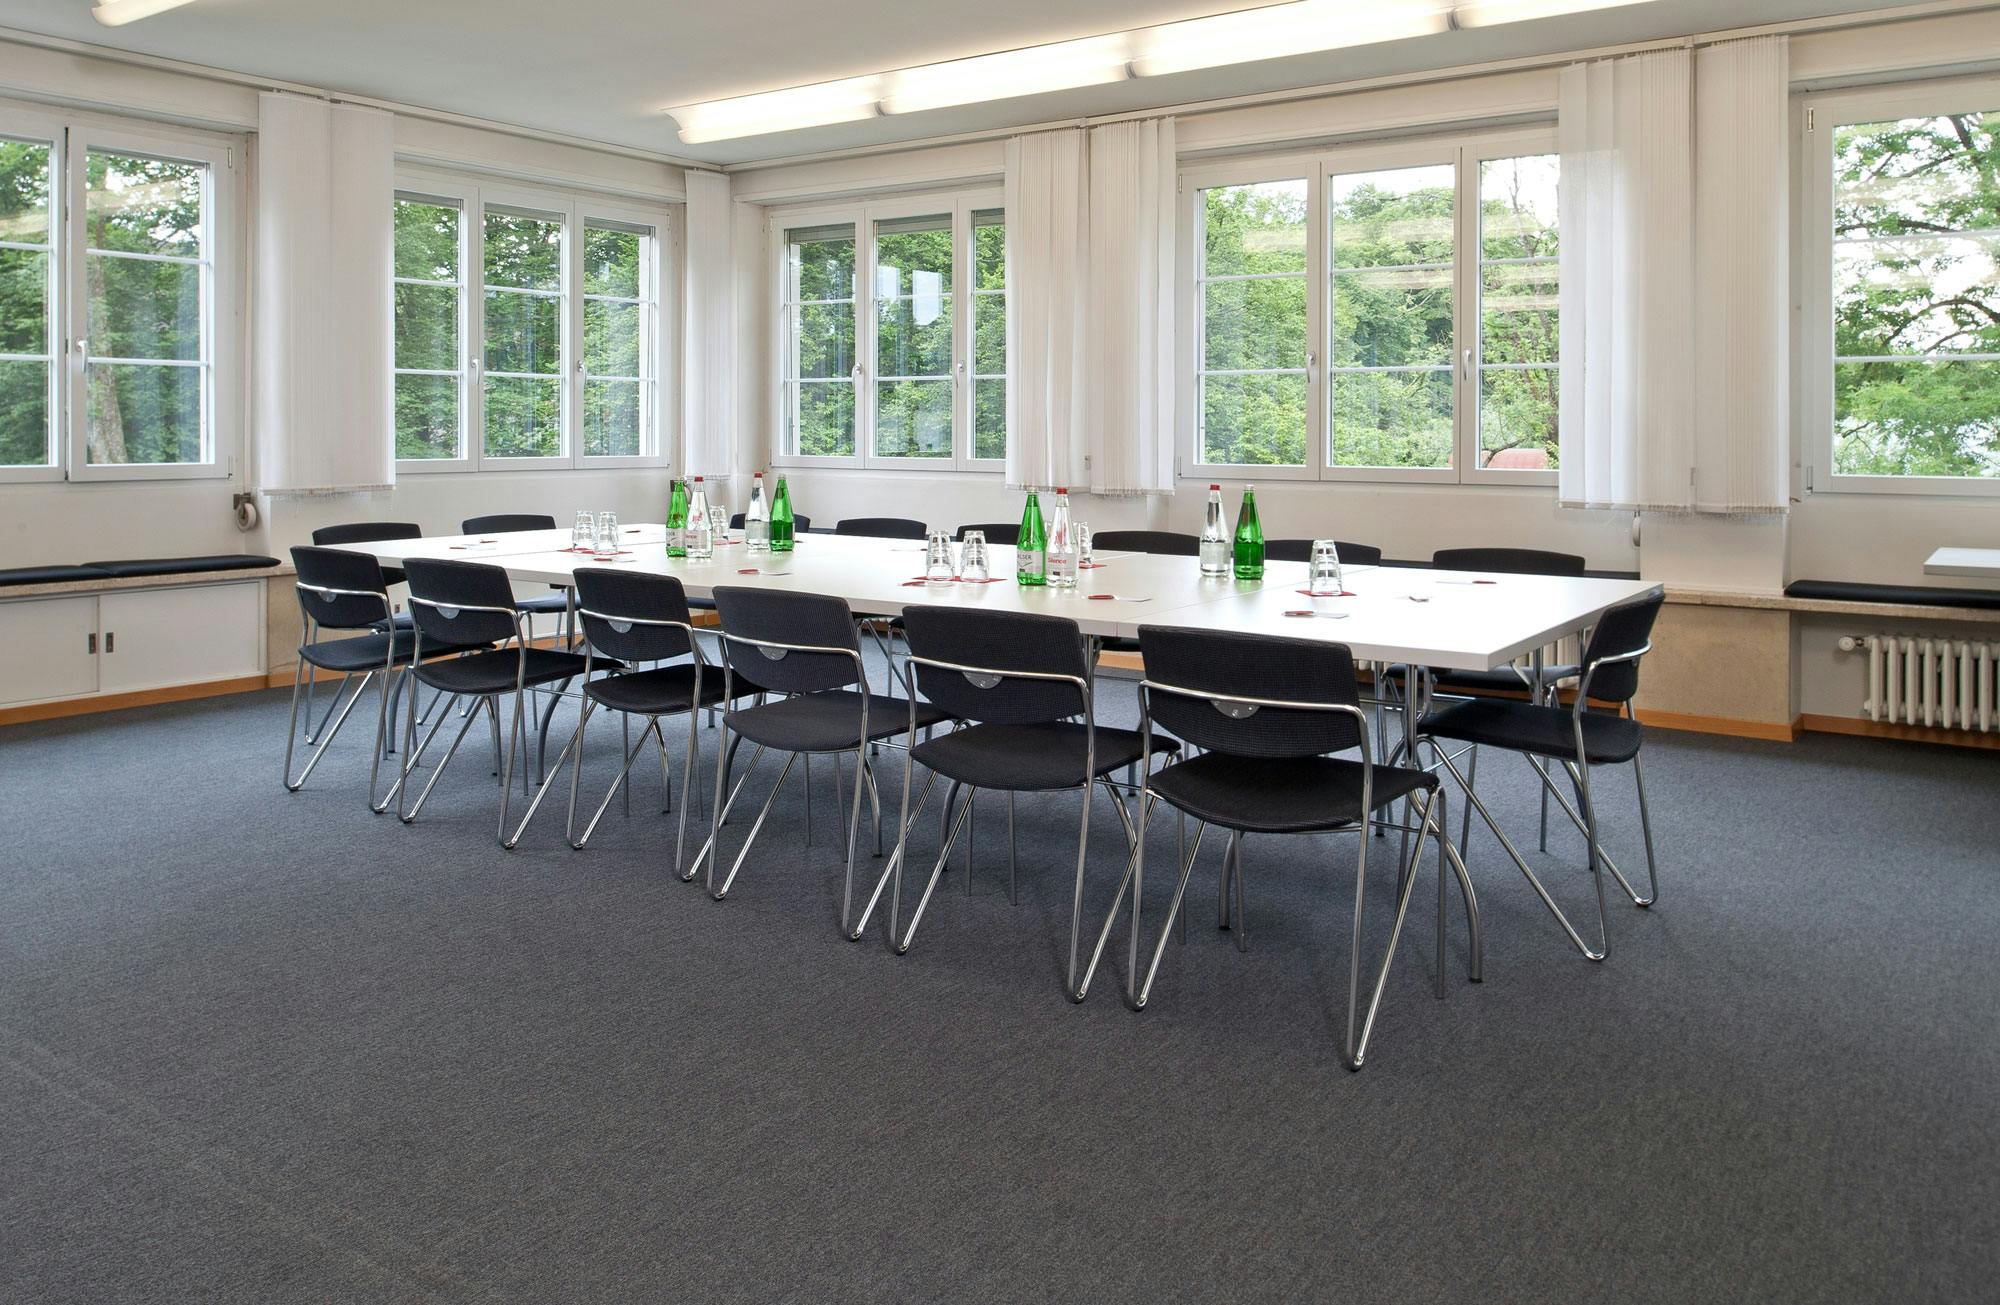 Konferenzraum mit Tischen und Stühlen, Wasserflaschen und Blick auf grüne Bäume durch Fenster.